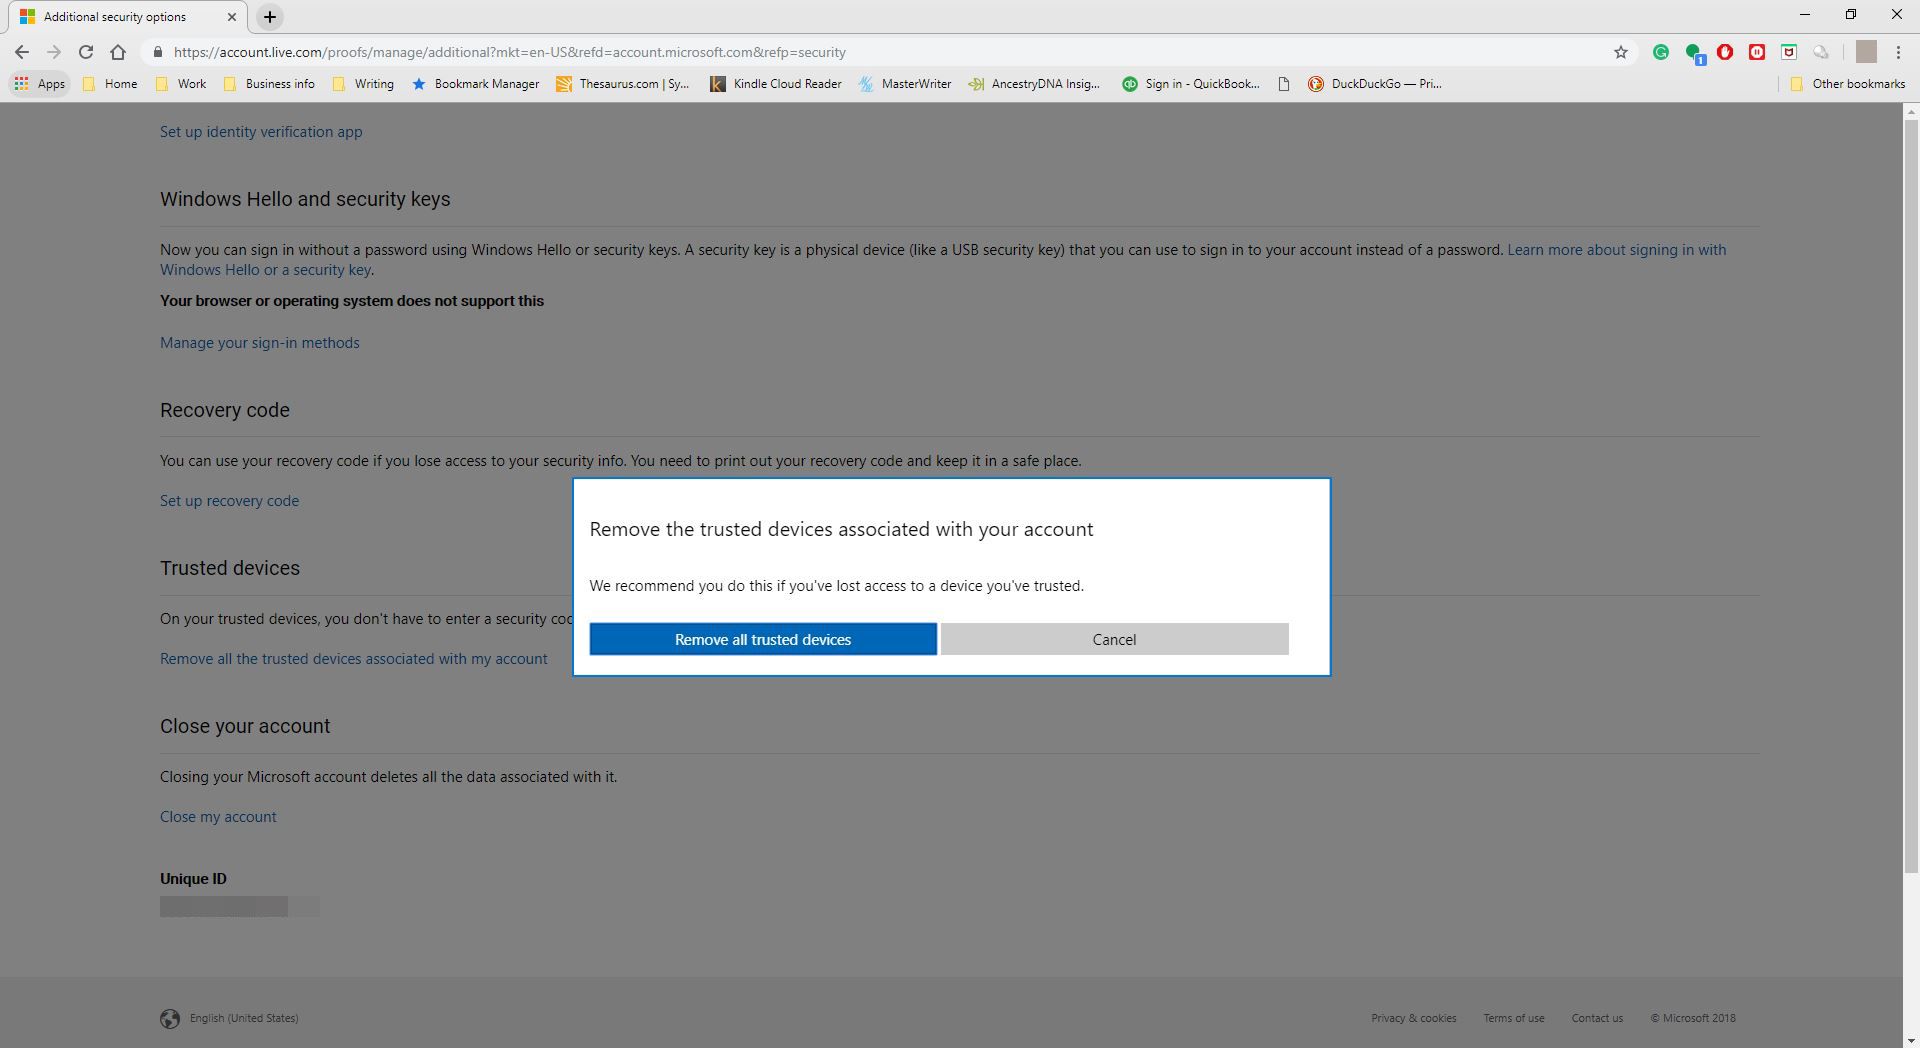 Potvrzení odebrání důvěryhodného zařízení pro Outlook.com.